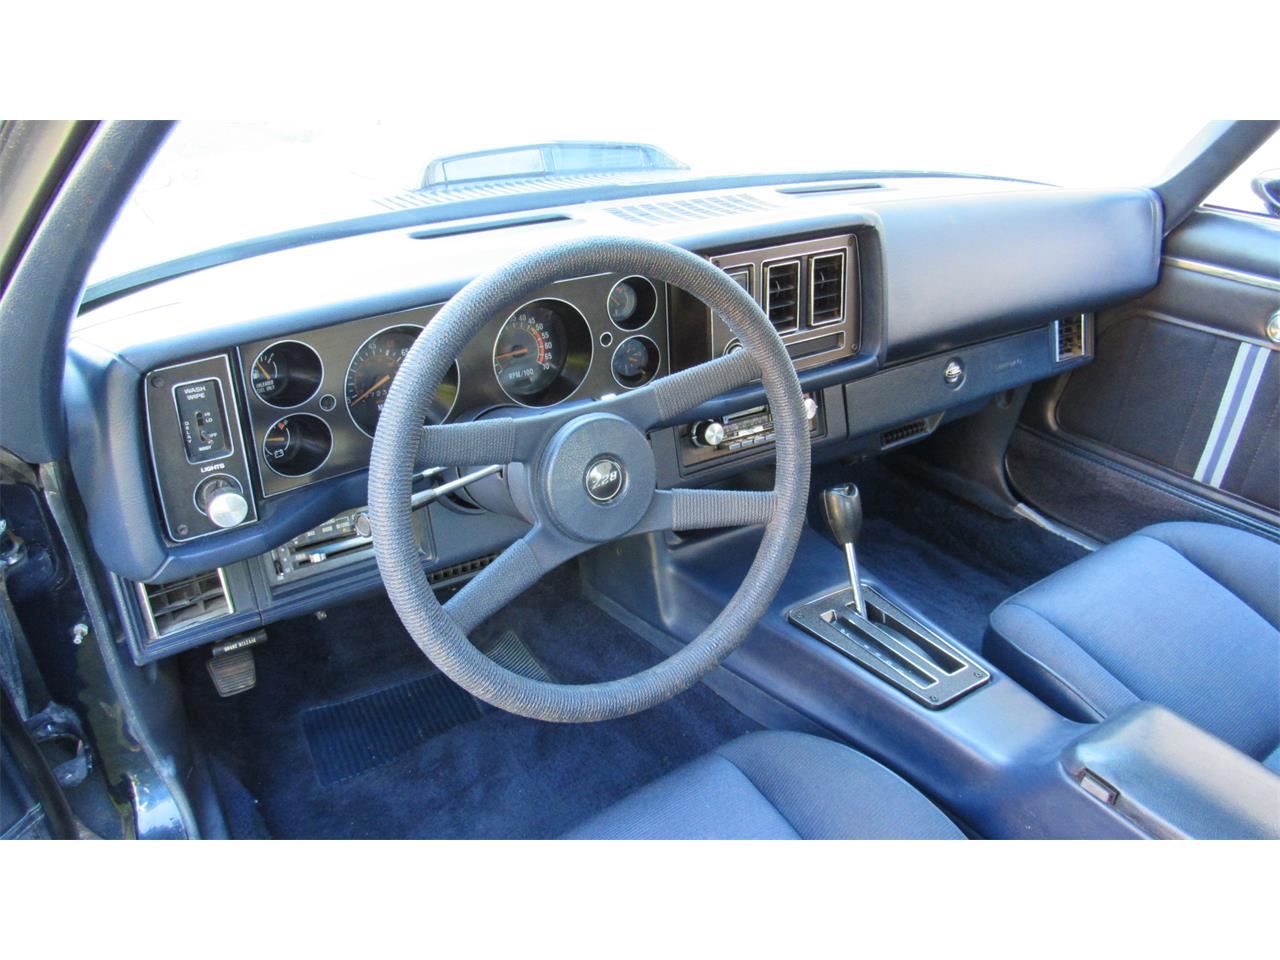 1980 Chevrolet Camaro Z28 For Sale Classiccars Com Cc